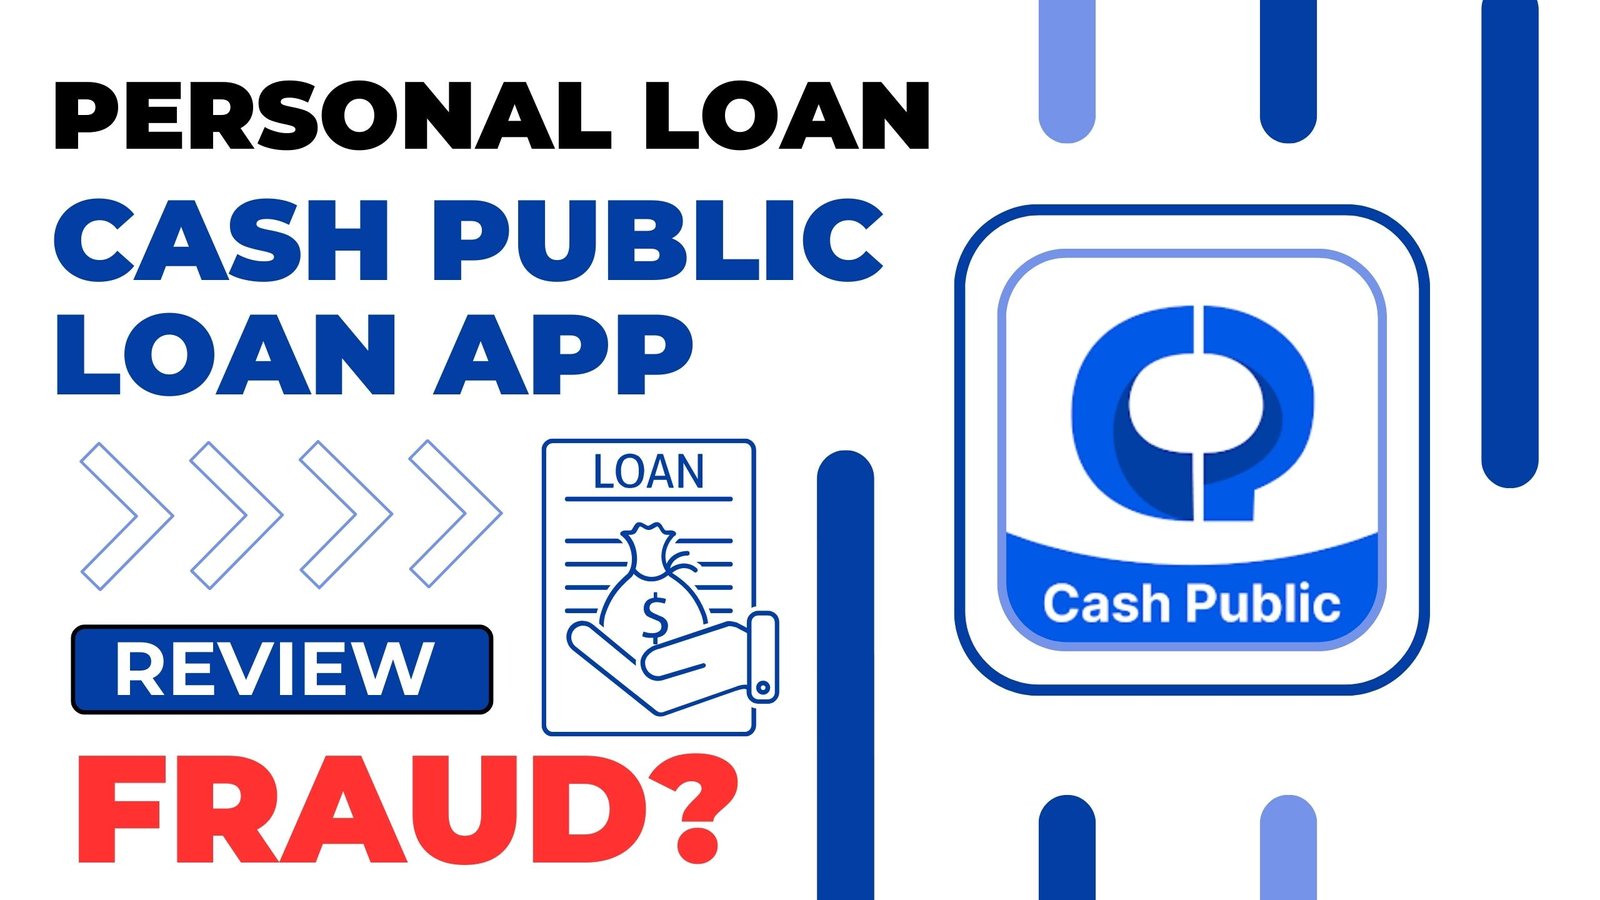 Cash Public Loan App Review